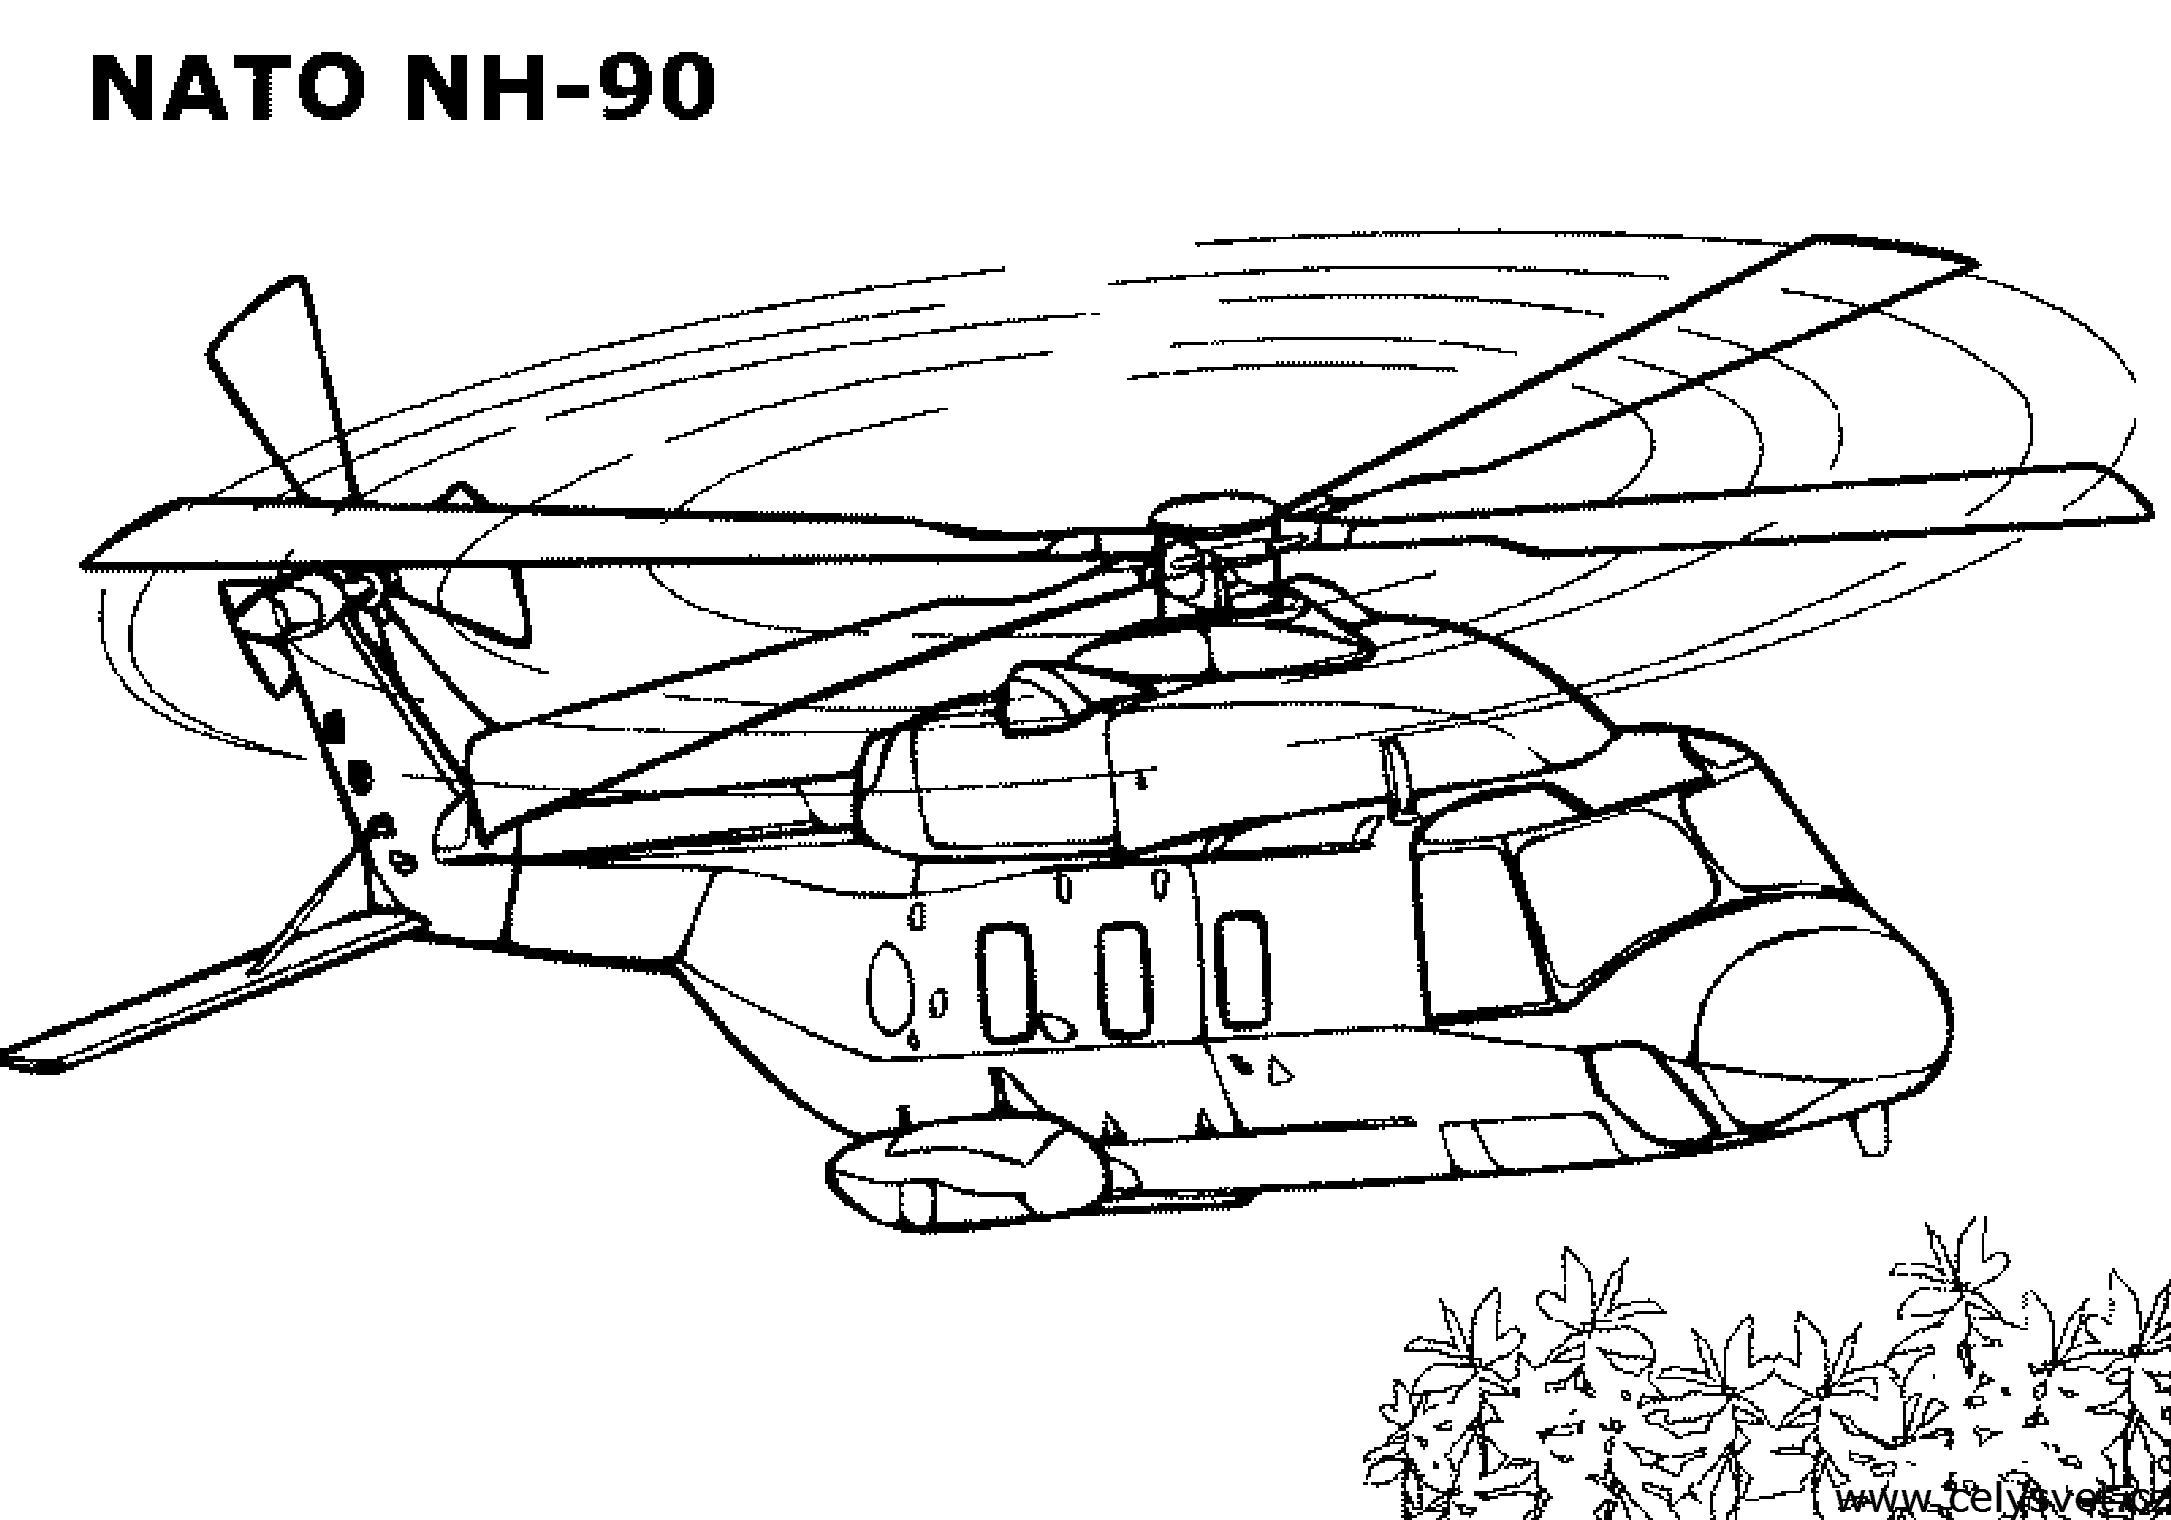  раскраски с вертолетами для детей                 раскраски на тему вертолеты для детей.  раскраски с вертолетами для мальчиков и девочек. раскраски для детей     